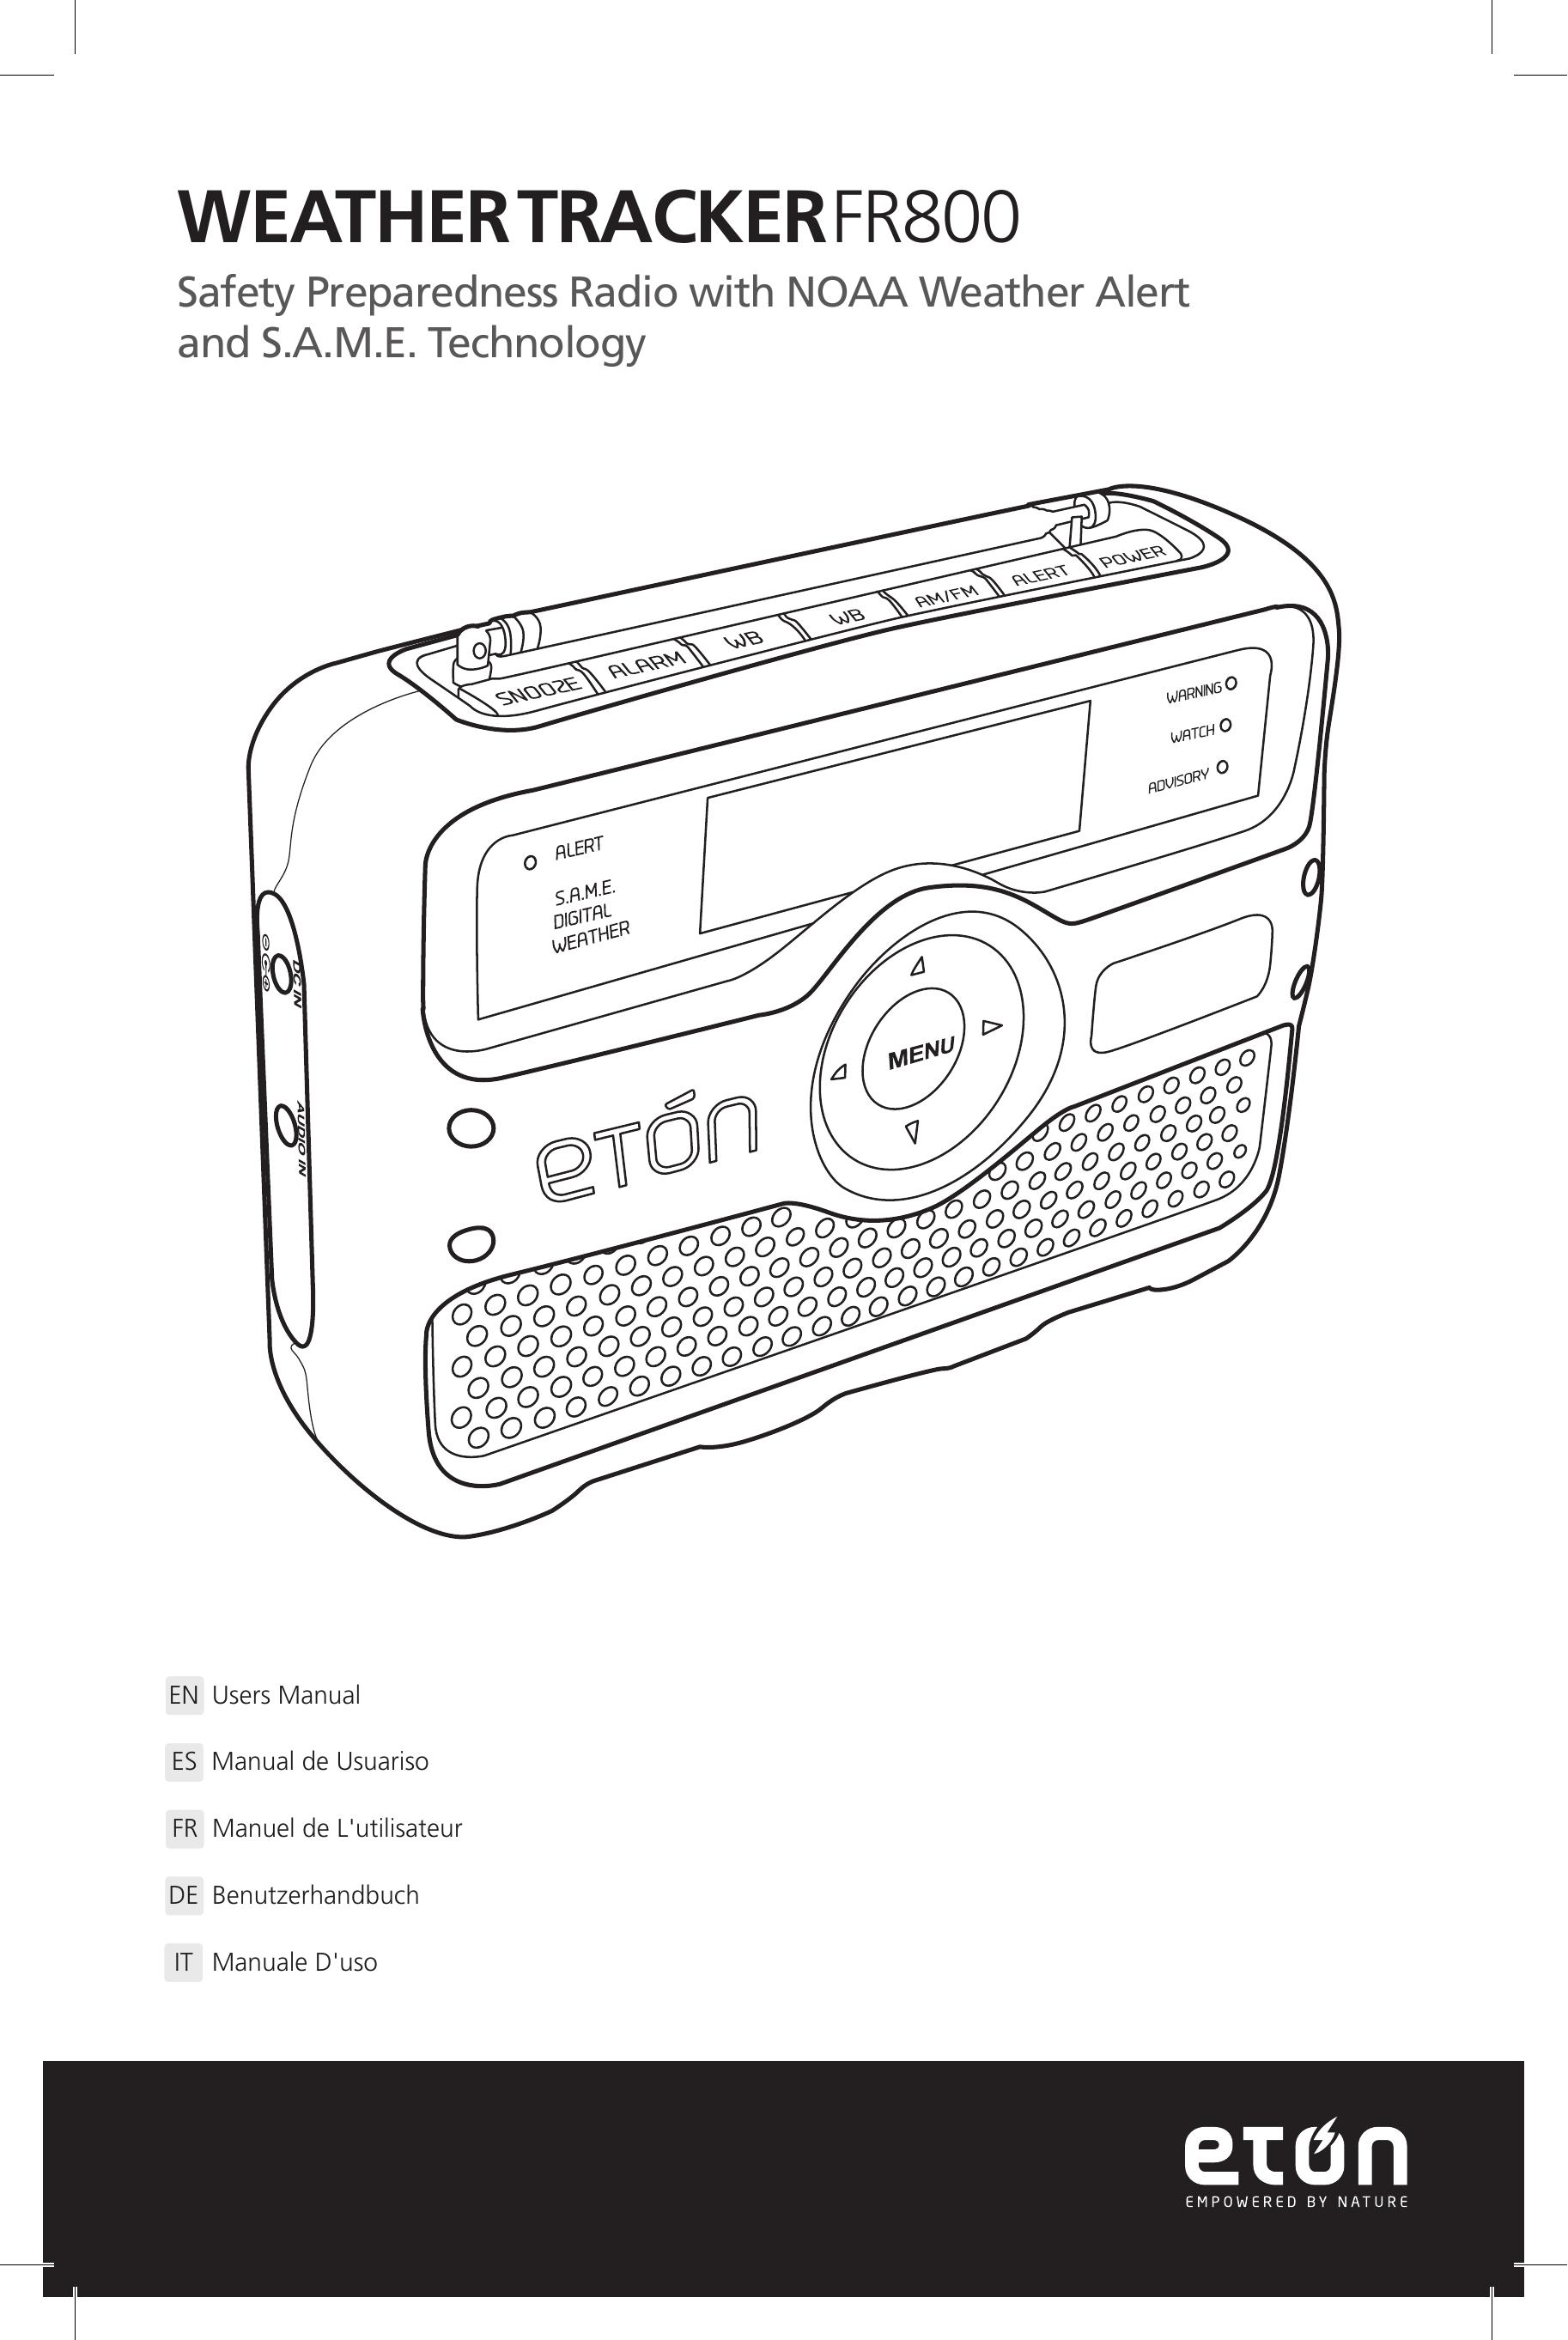 Eton FR800 Weather Radio User Manual